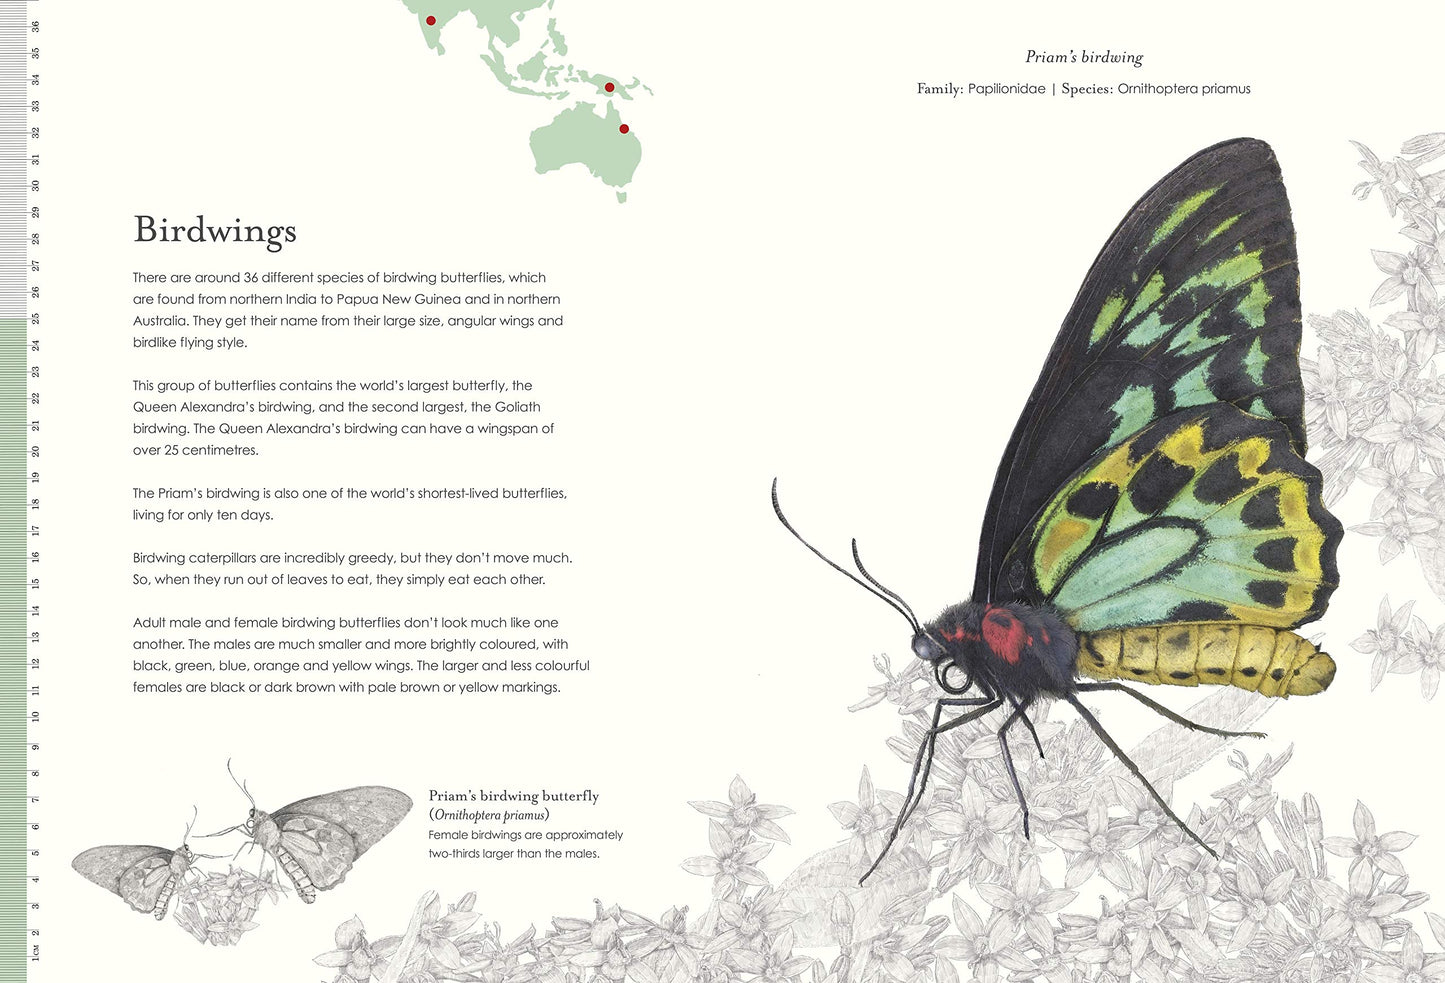 Sensational Butterflies - Ben Rothery